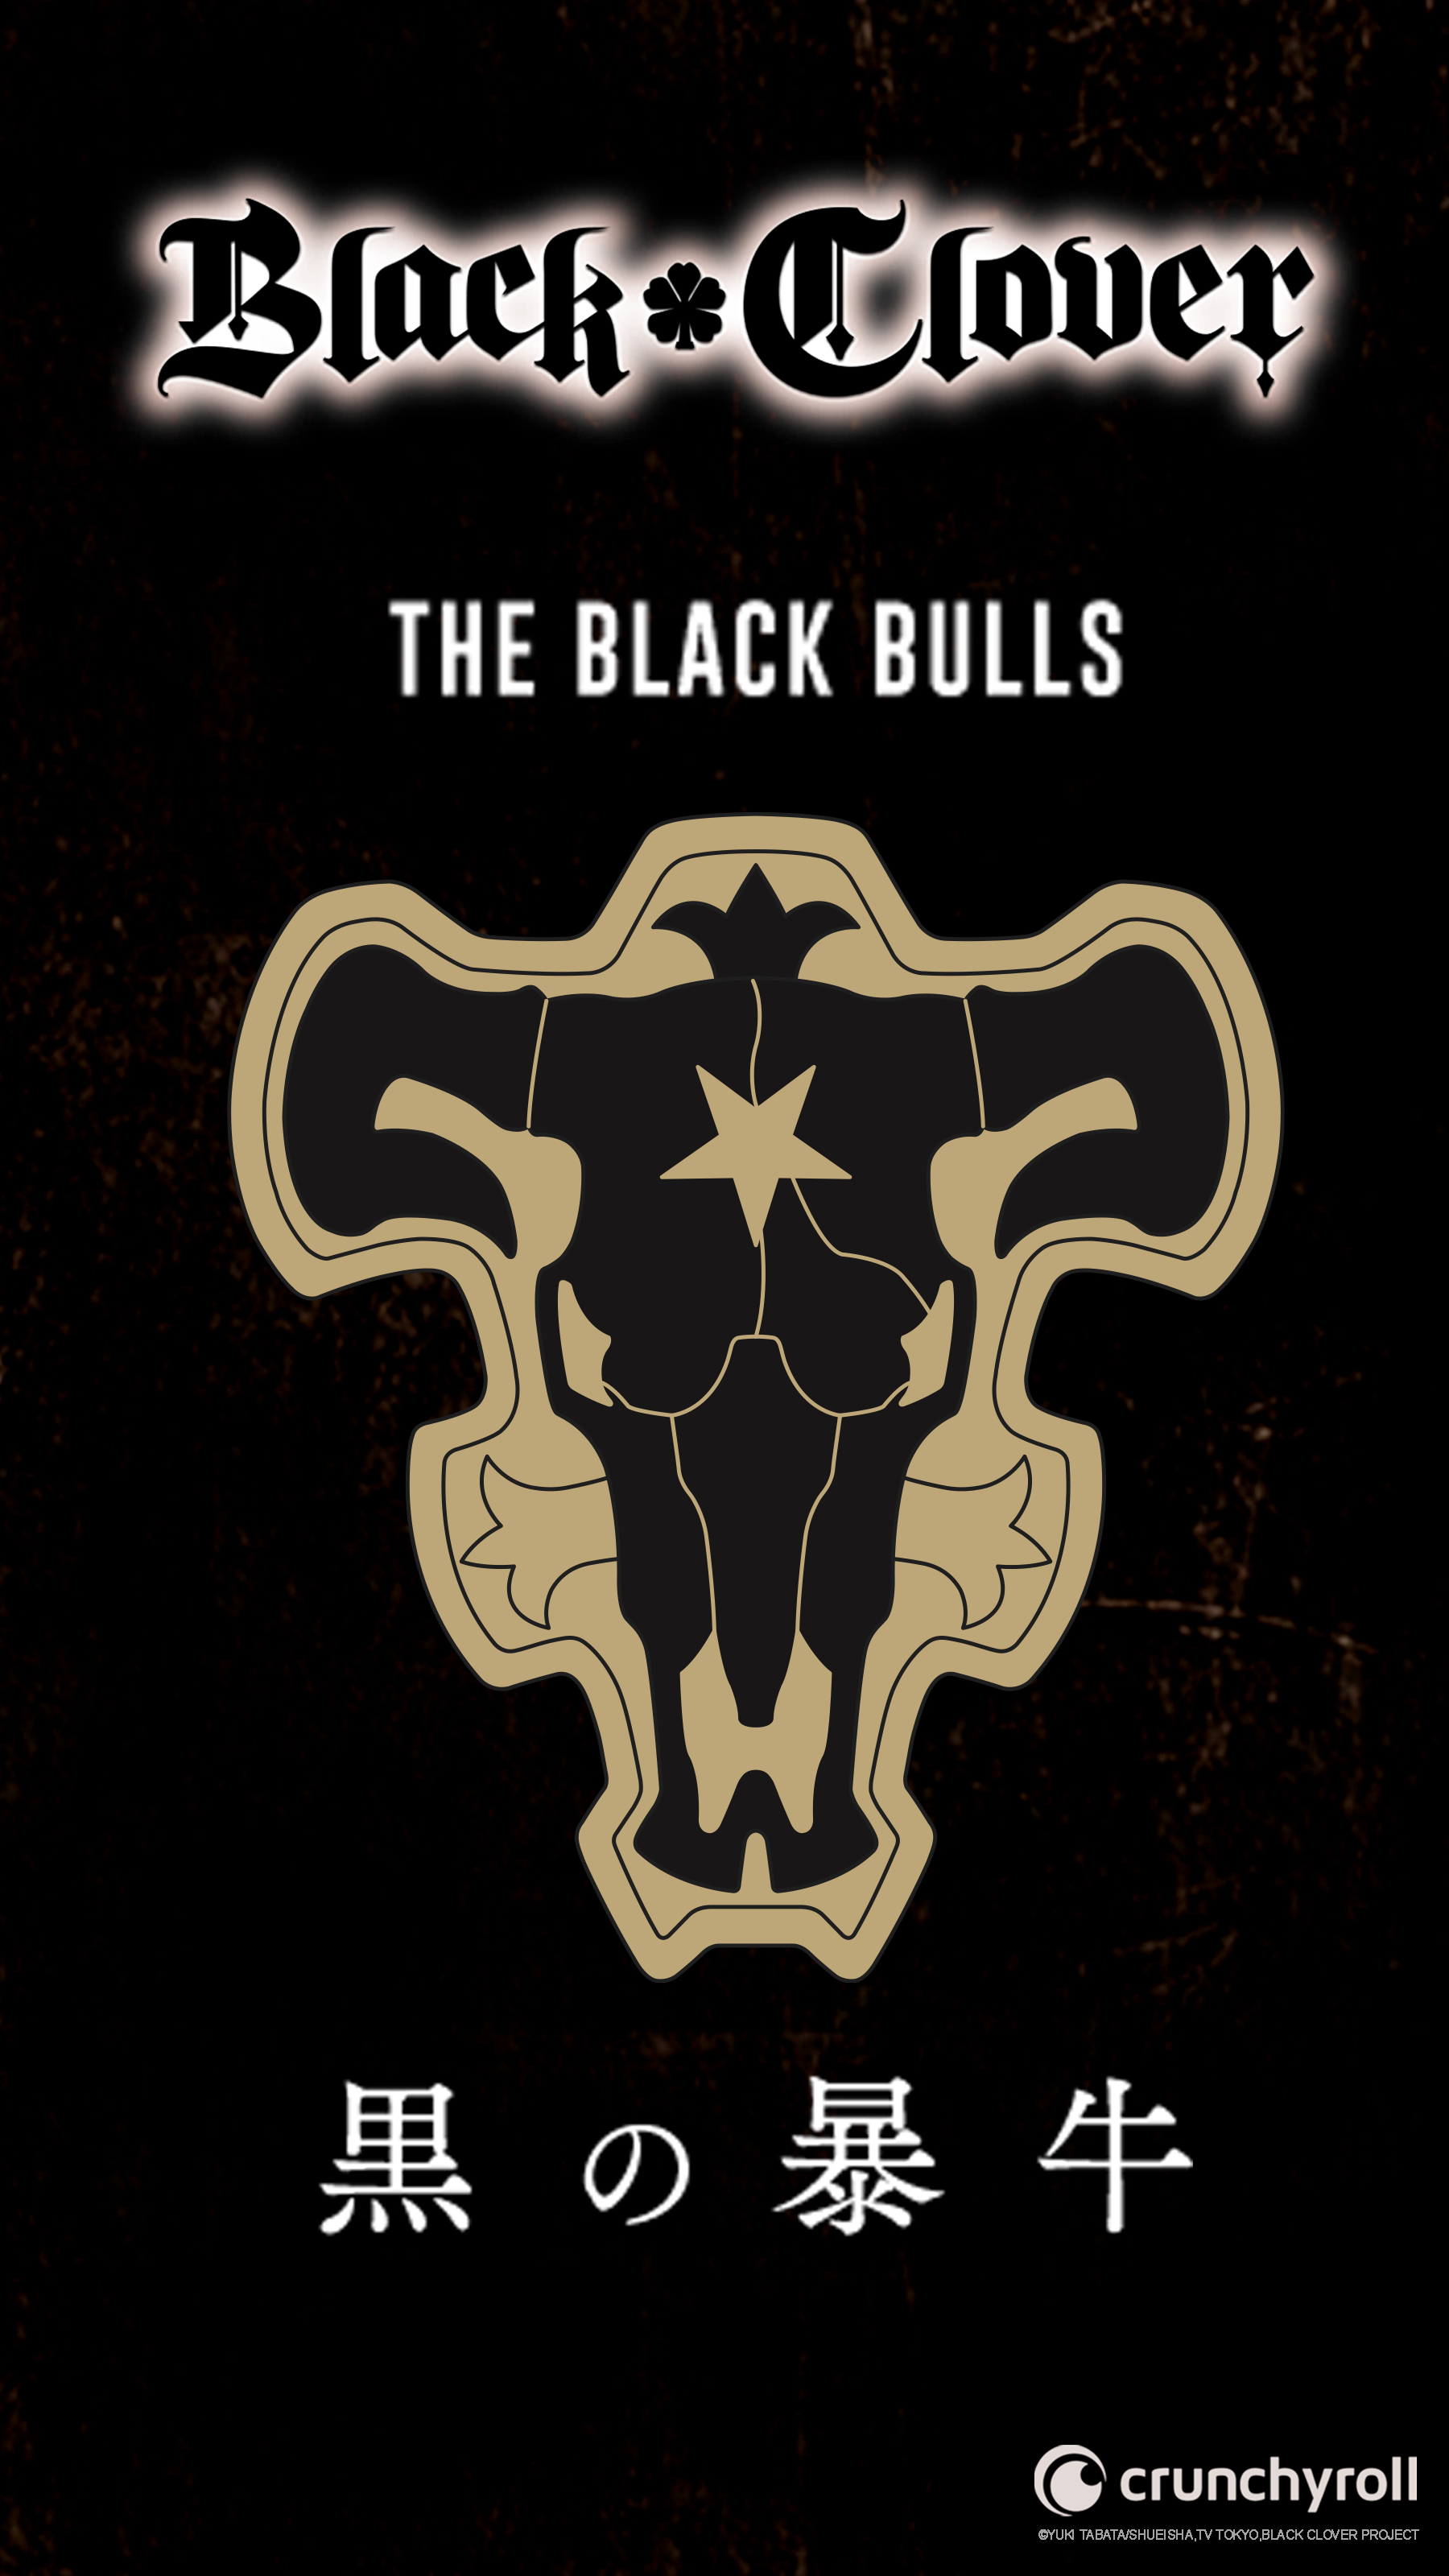 ♣️ BLACK CLOVER ♣️ on Twitter. Black bull, Black clover anime, Black clover manga